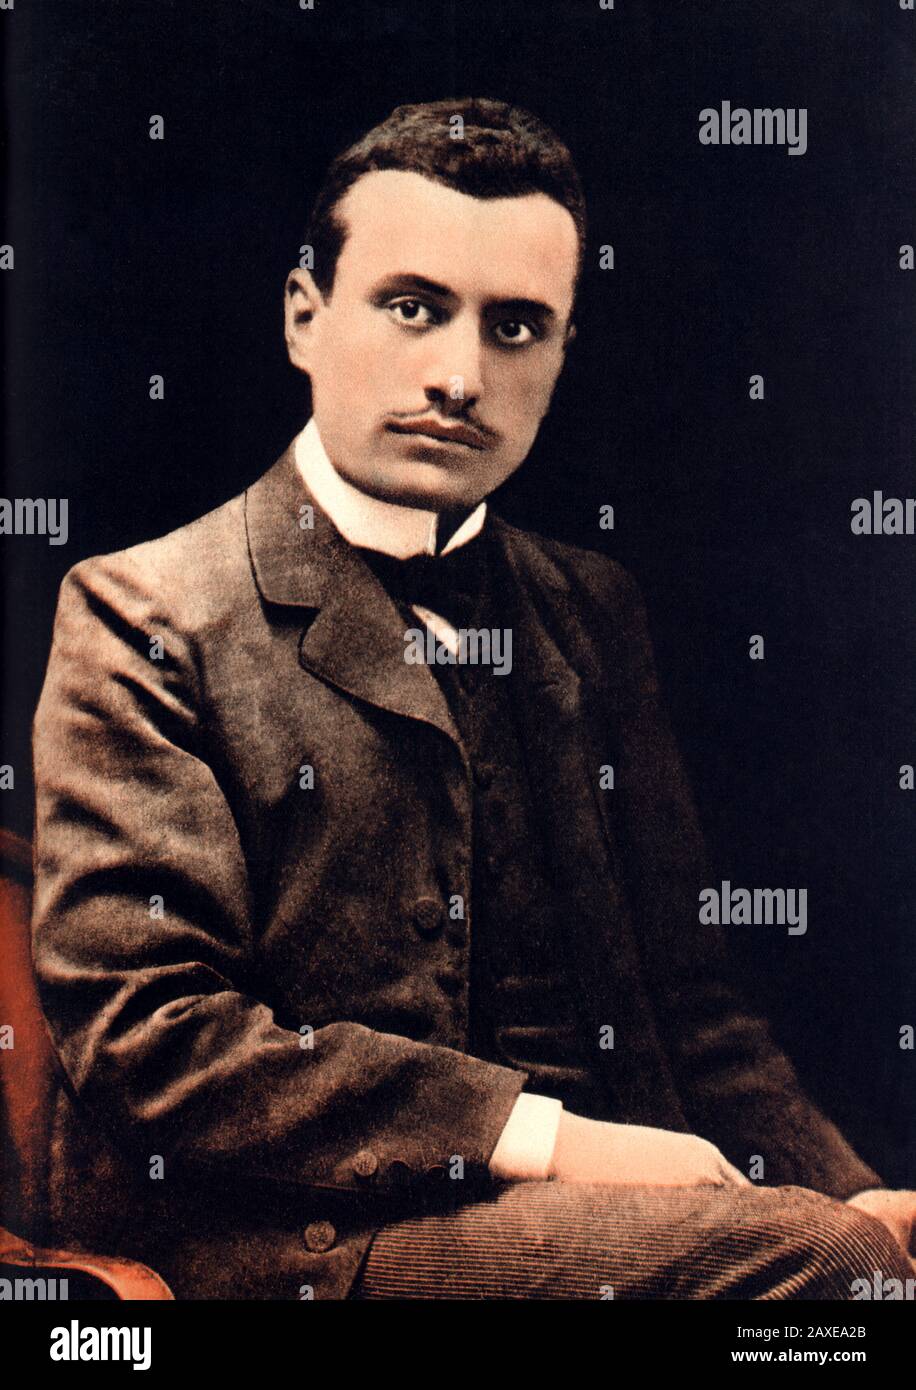 1910 CA , ITALIE : Le fasciste italien Duce BENITO MUSSOLINI ( Predappio, 29 juillet 1883 ‚Äì Giulino di Mezzegra, 28 avril 1945 ) - ritratto - portrait - POLITICA - POLISO - ITALIA - POLITIC - portrait - ITALY - FASSISMO - FASCISME - FASSISTA - ITALIA - personnalité personnalités quand était jeune - personalità da giovane giovani €---- Archivio GBB Banque D'Images